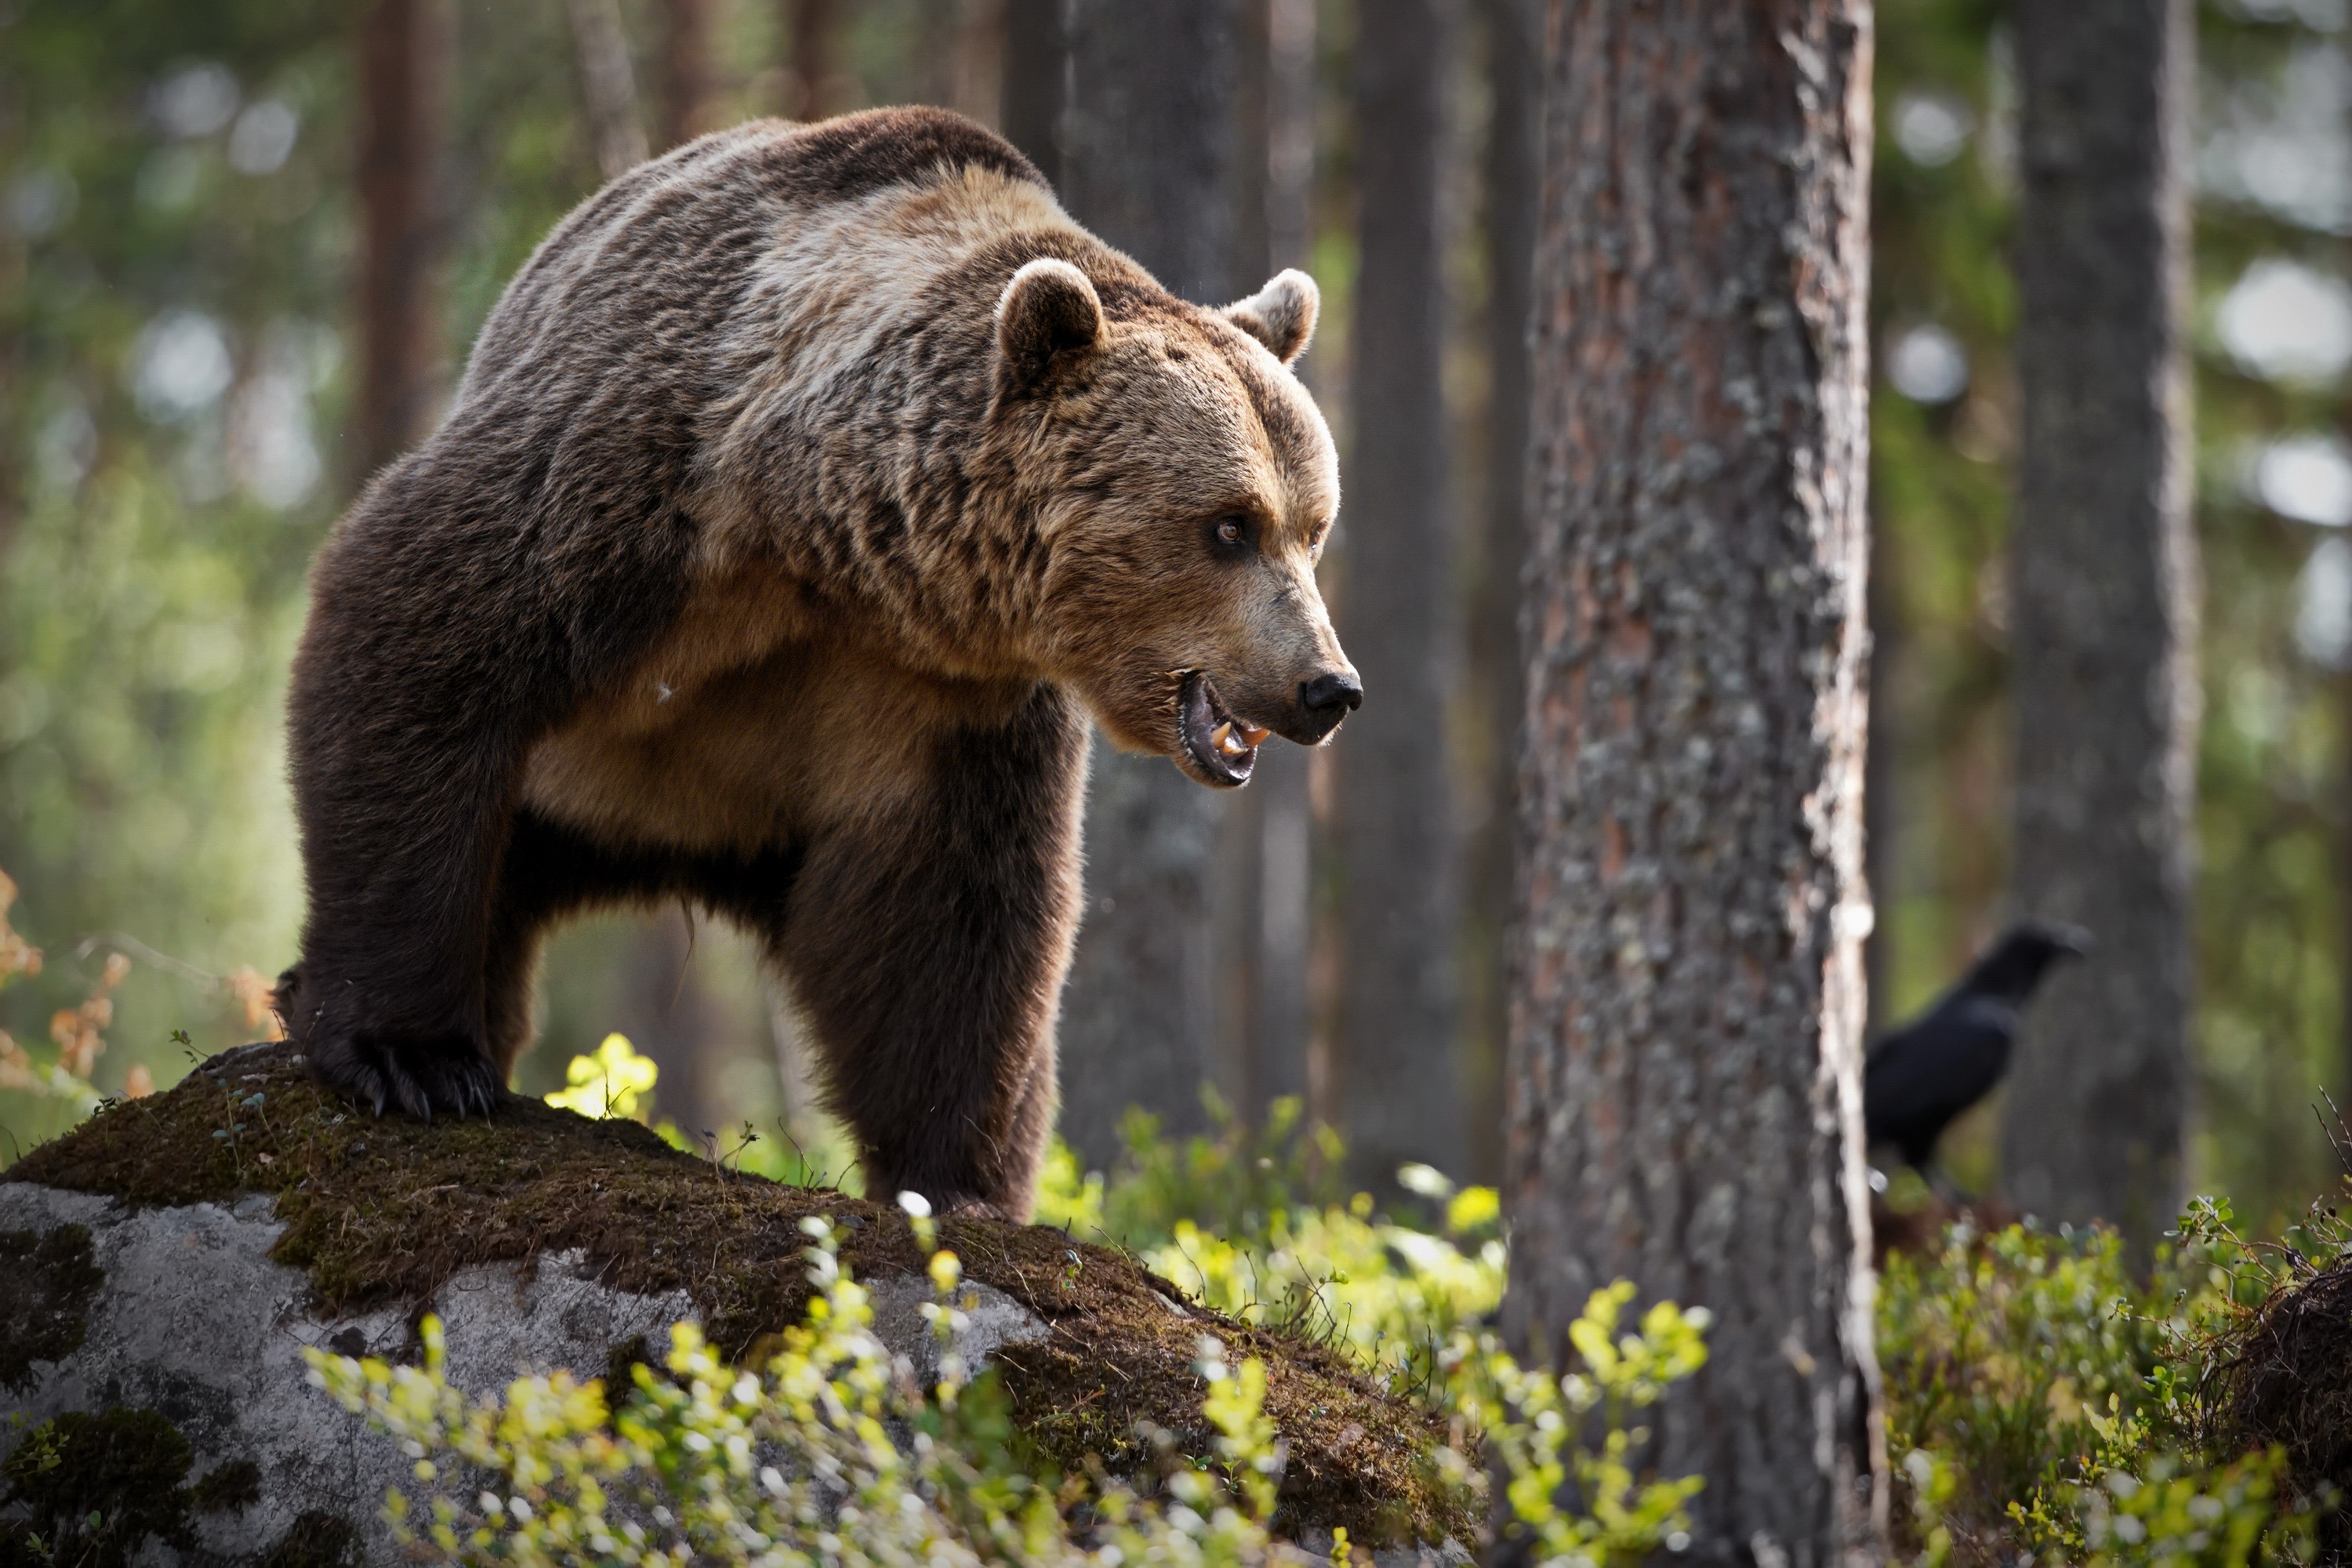 Baixar papel de parede para celular de Animais, Urso, Ursos gratuito.